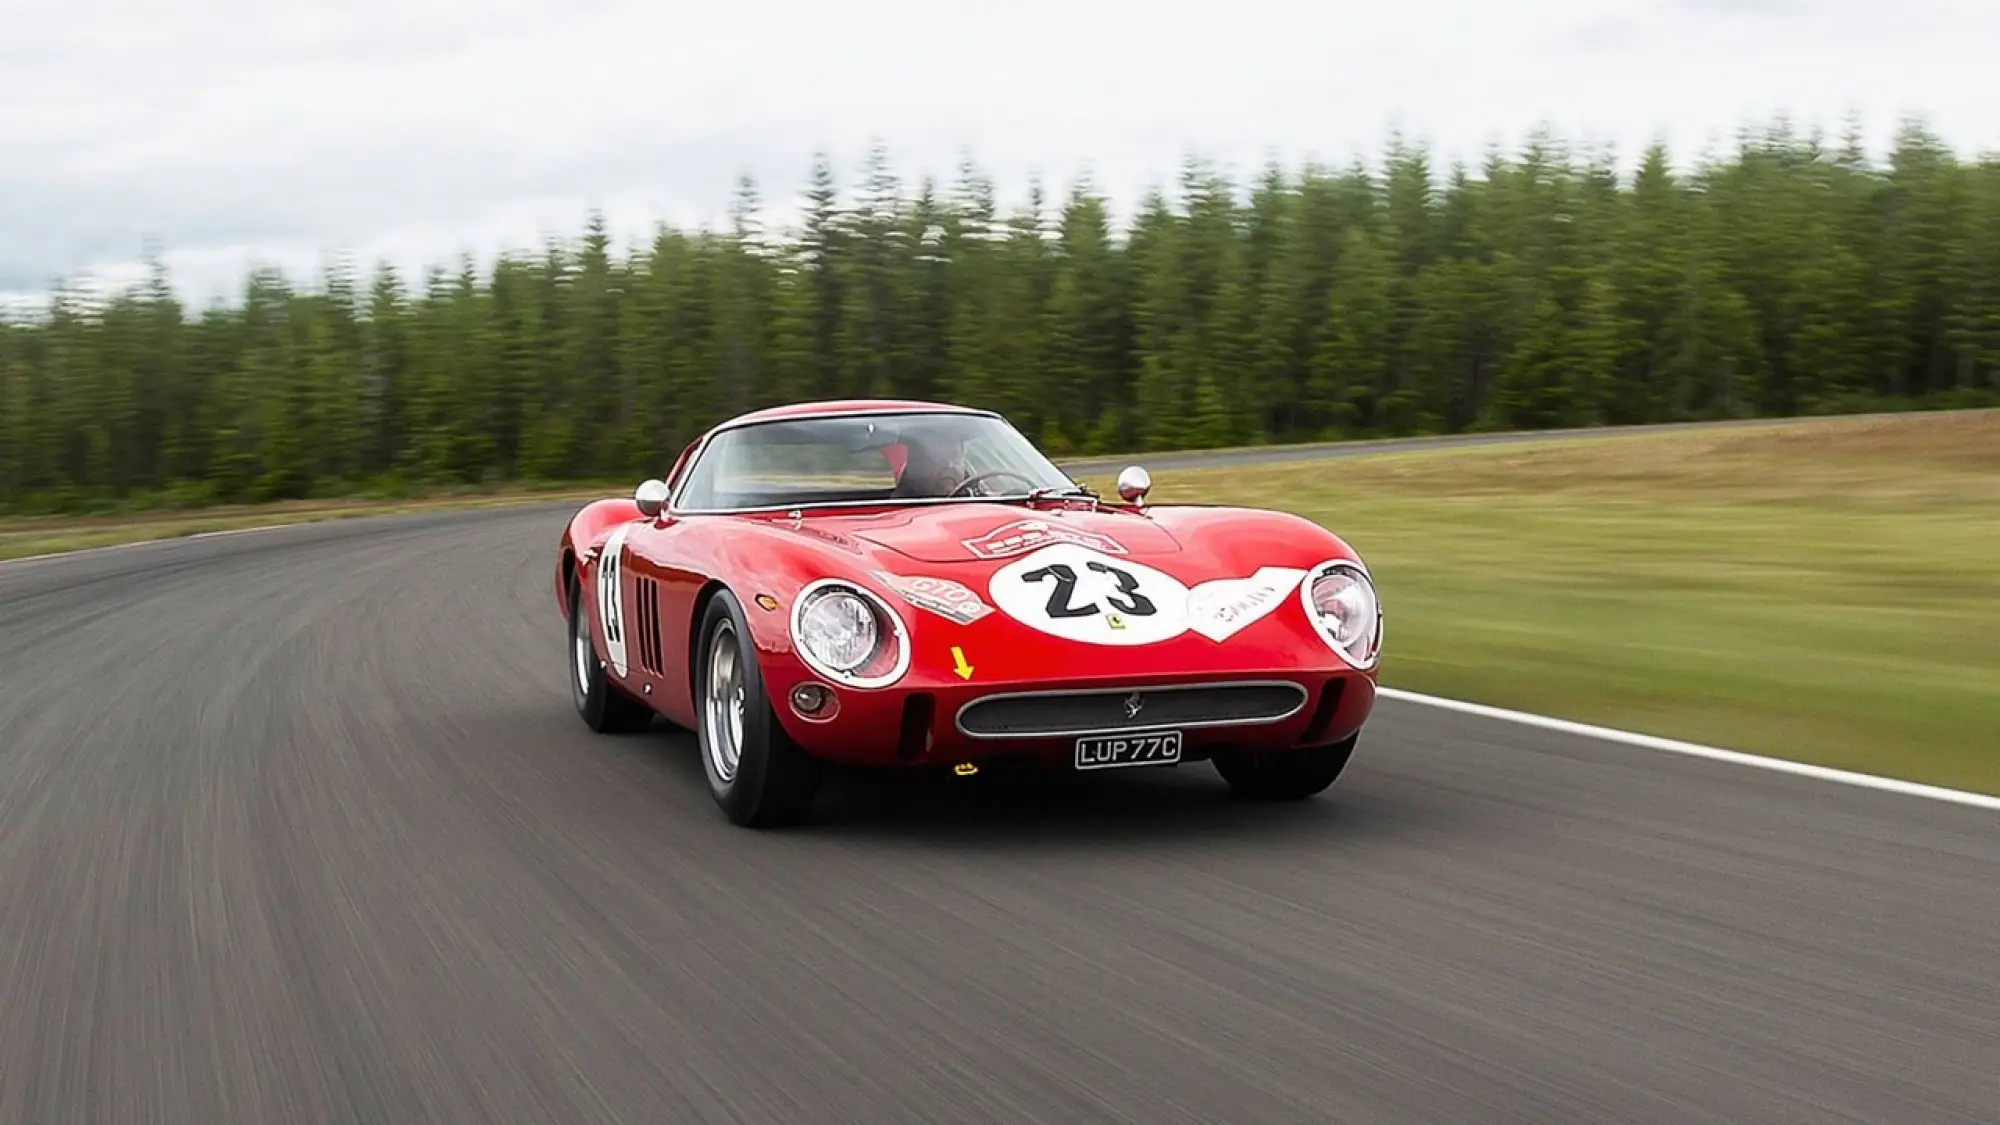 Ferrari 250 GTO vendita record 54 milioni - 2